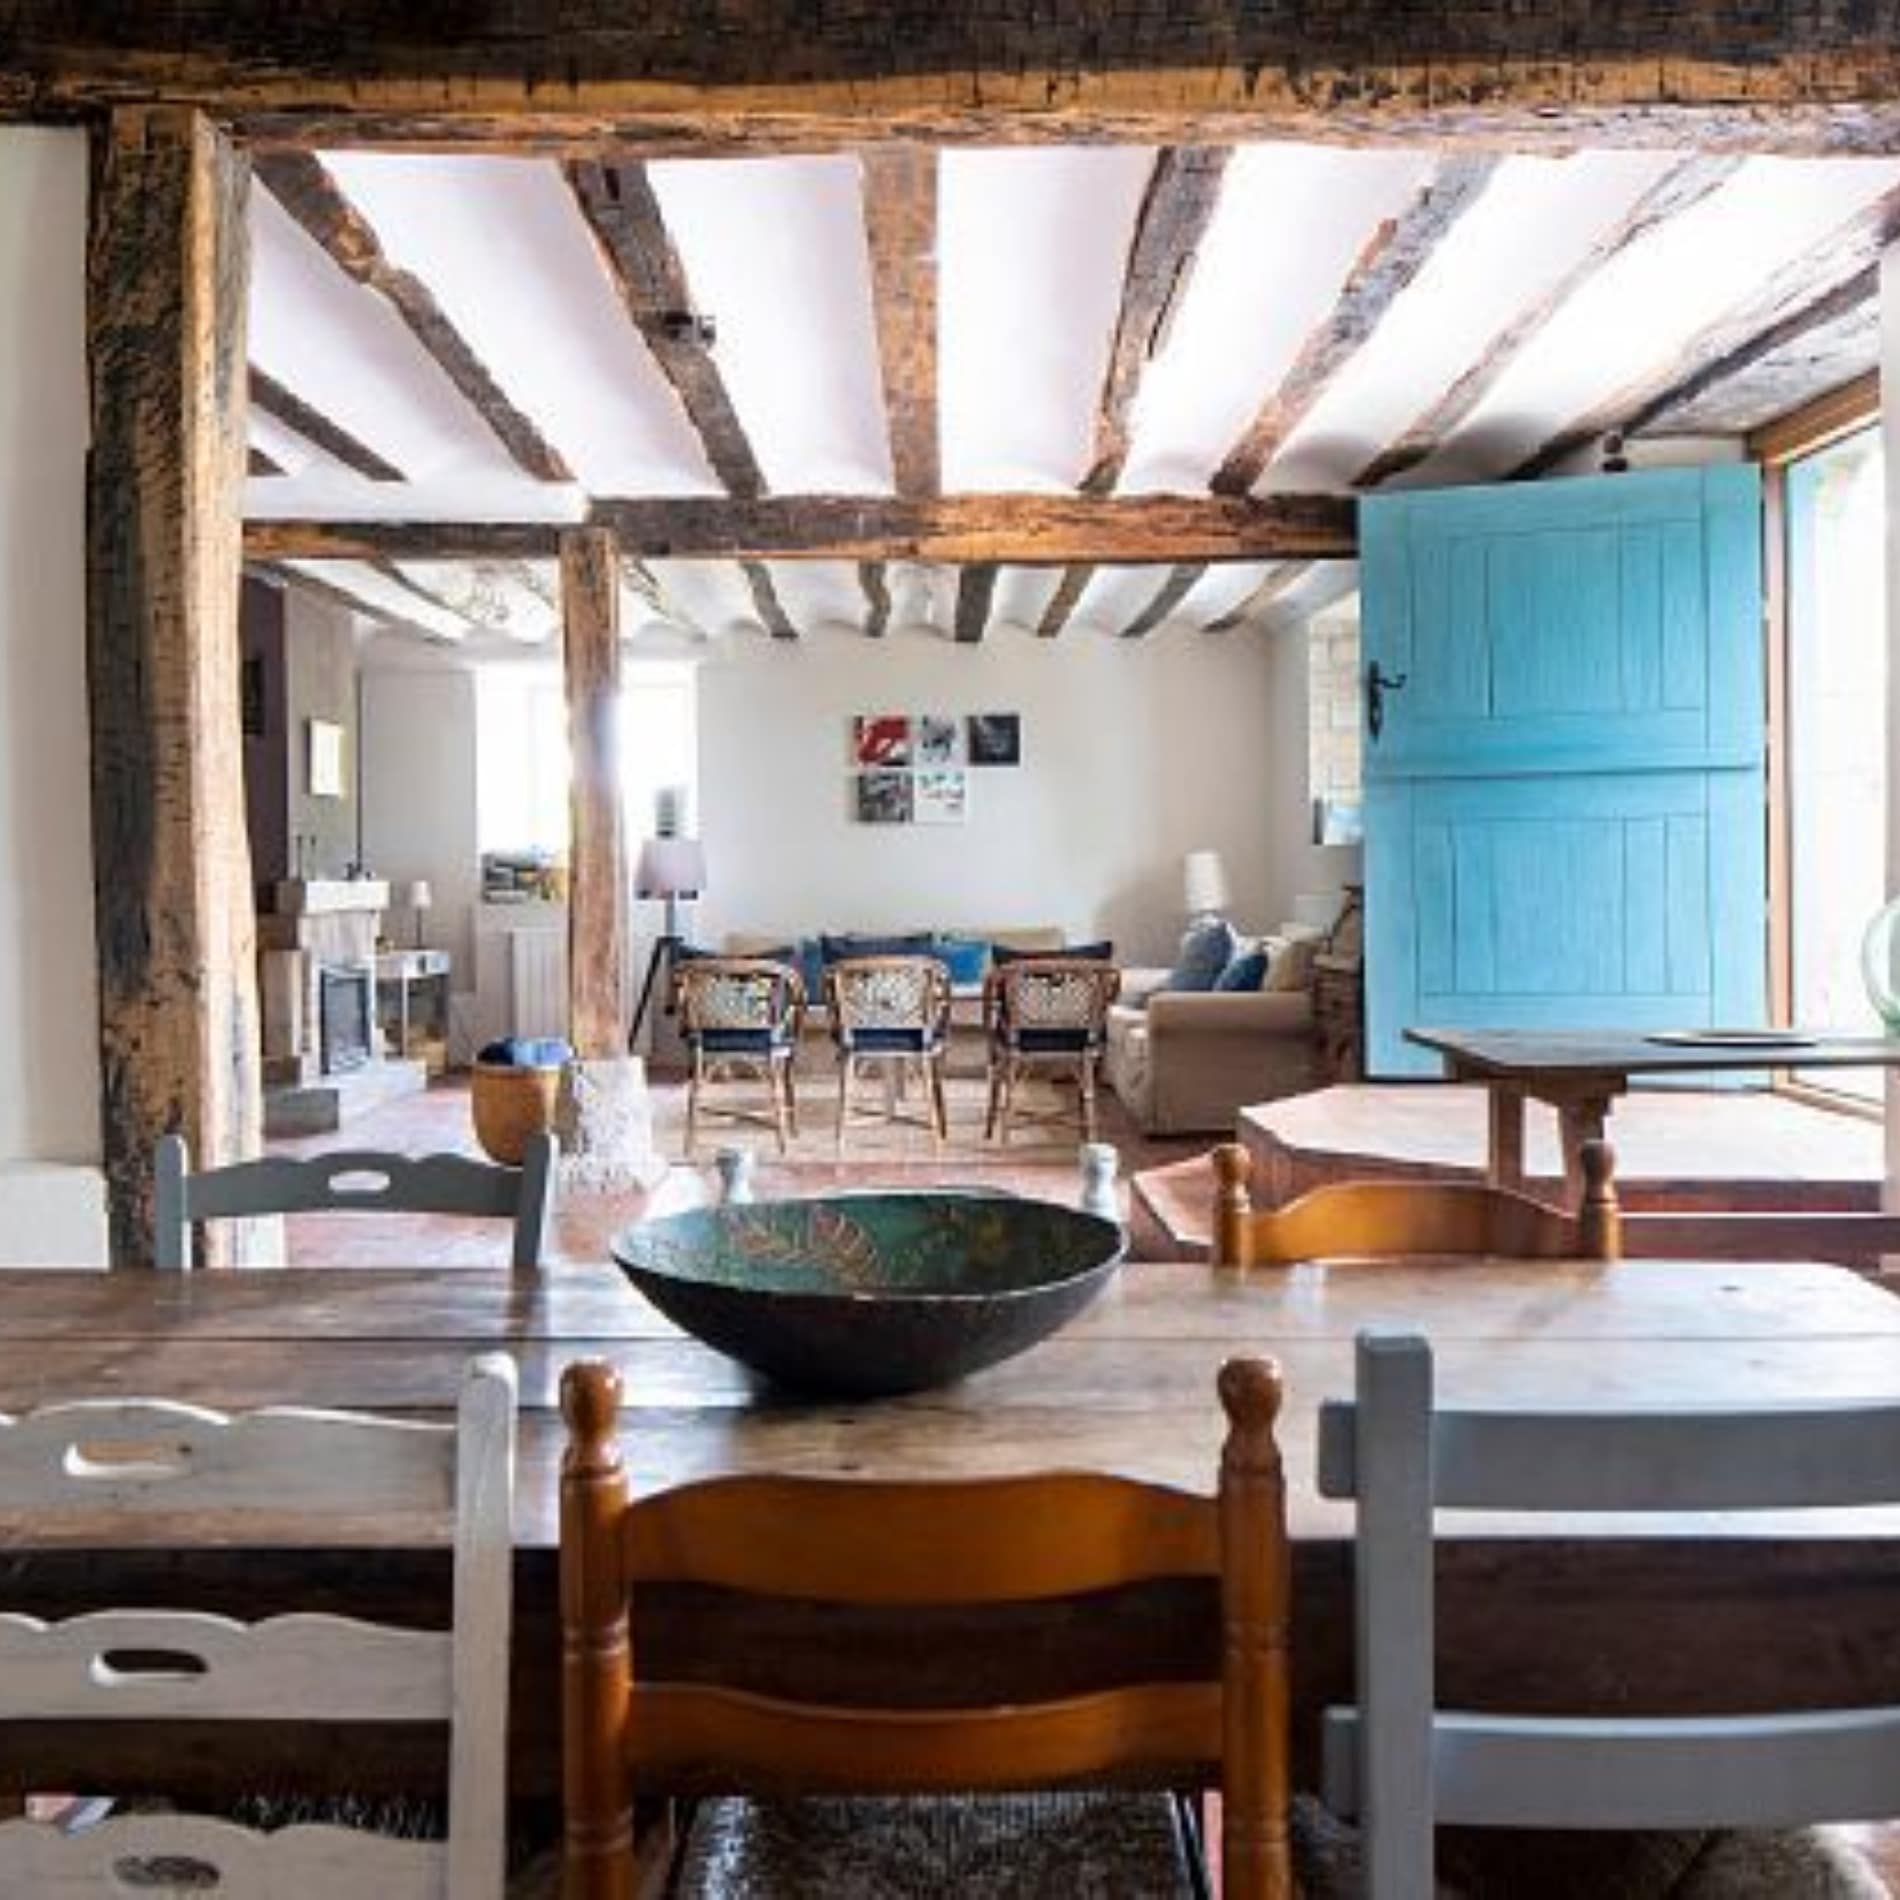 Salón-comedor de casa rural de estilo rústico con muebles y vigas de madera